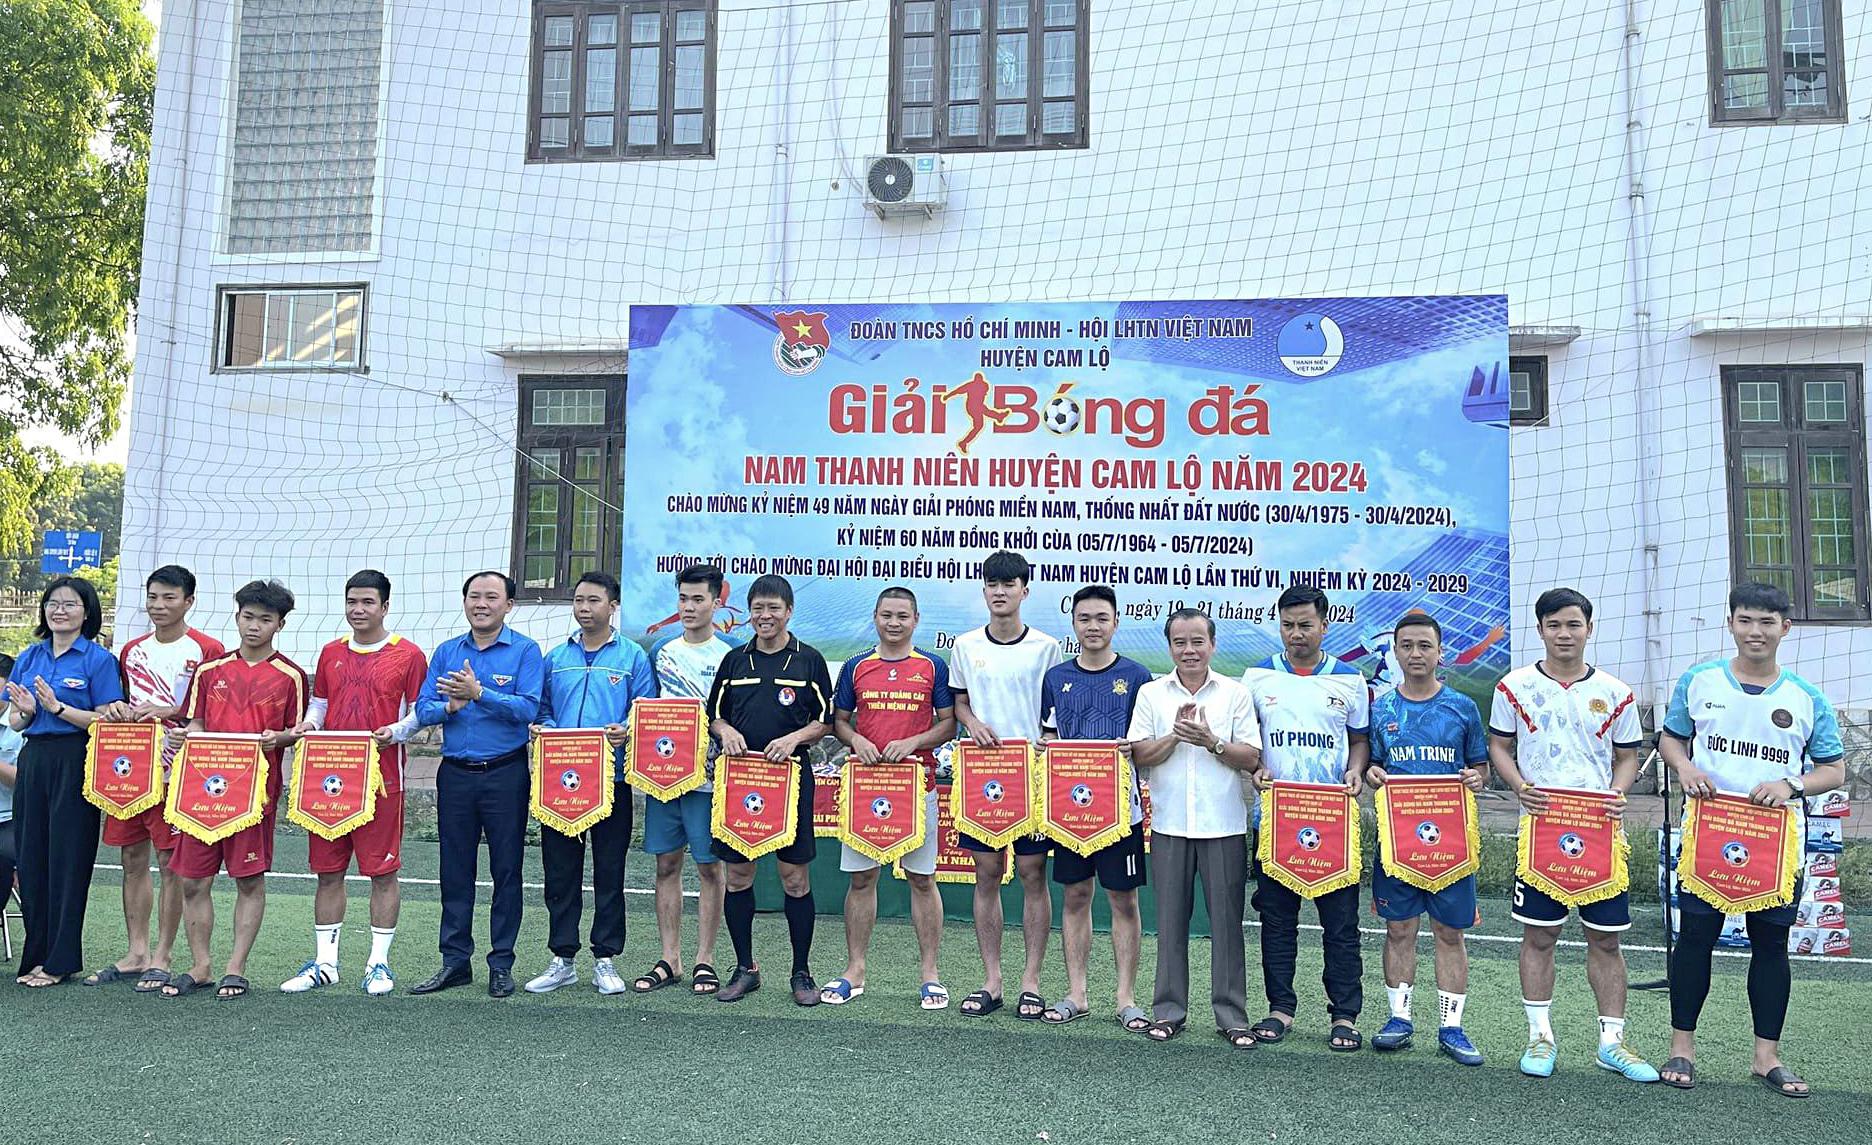 Giải bóng đá nam thanh niên huyện Cam Lộ năm 2024